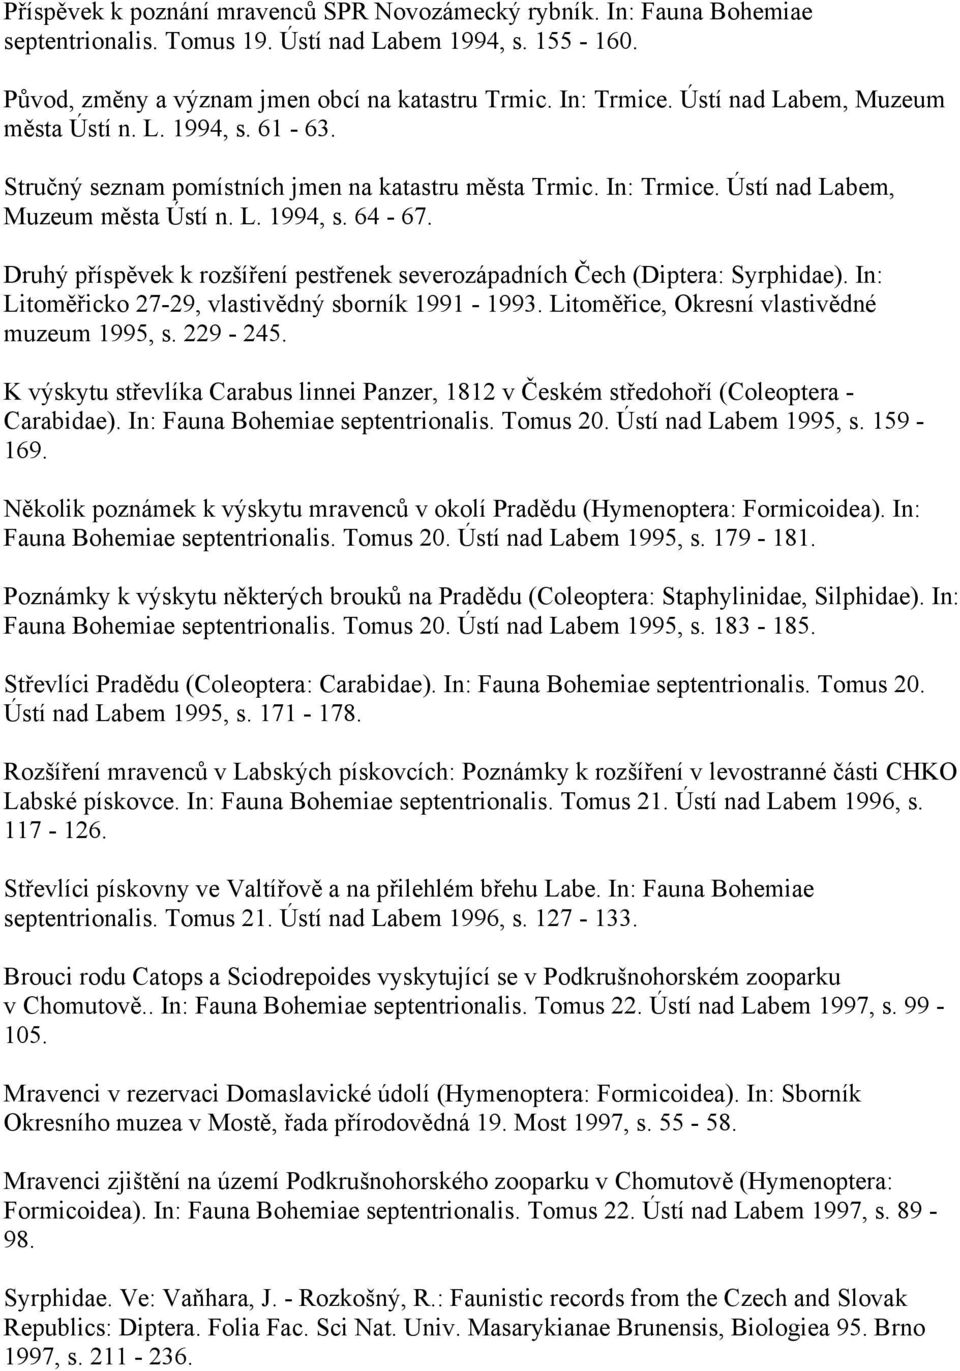 Druhý příspěvek k rozšíření pestřenek severozápadních Čech (Diptera: Syrphidae). In: Litoměřicko 27-29, vlastivědný sborník 1991-1993. Litoměřice, Okresní vlastivědné muzeum 1995, s. 229-245.